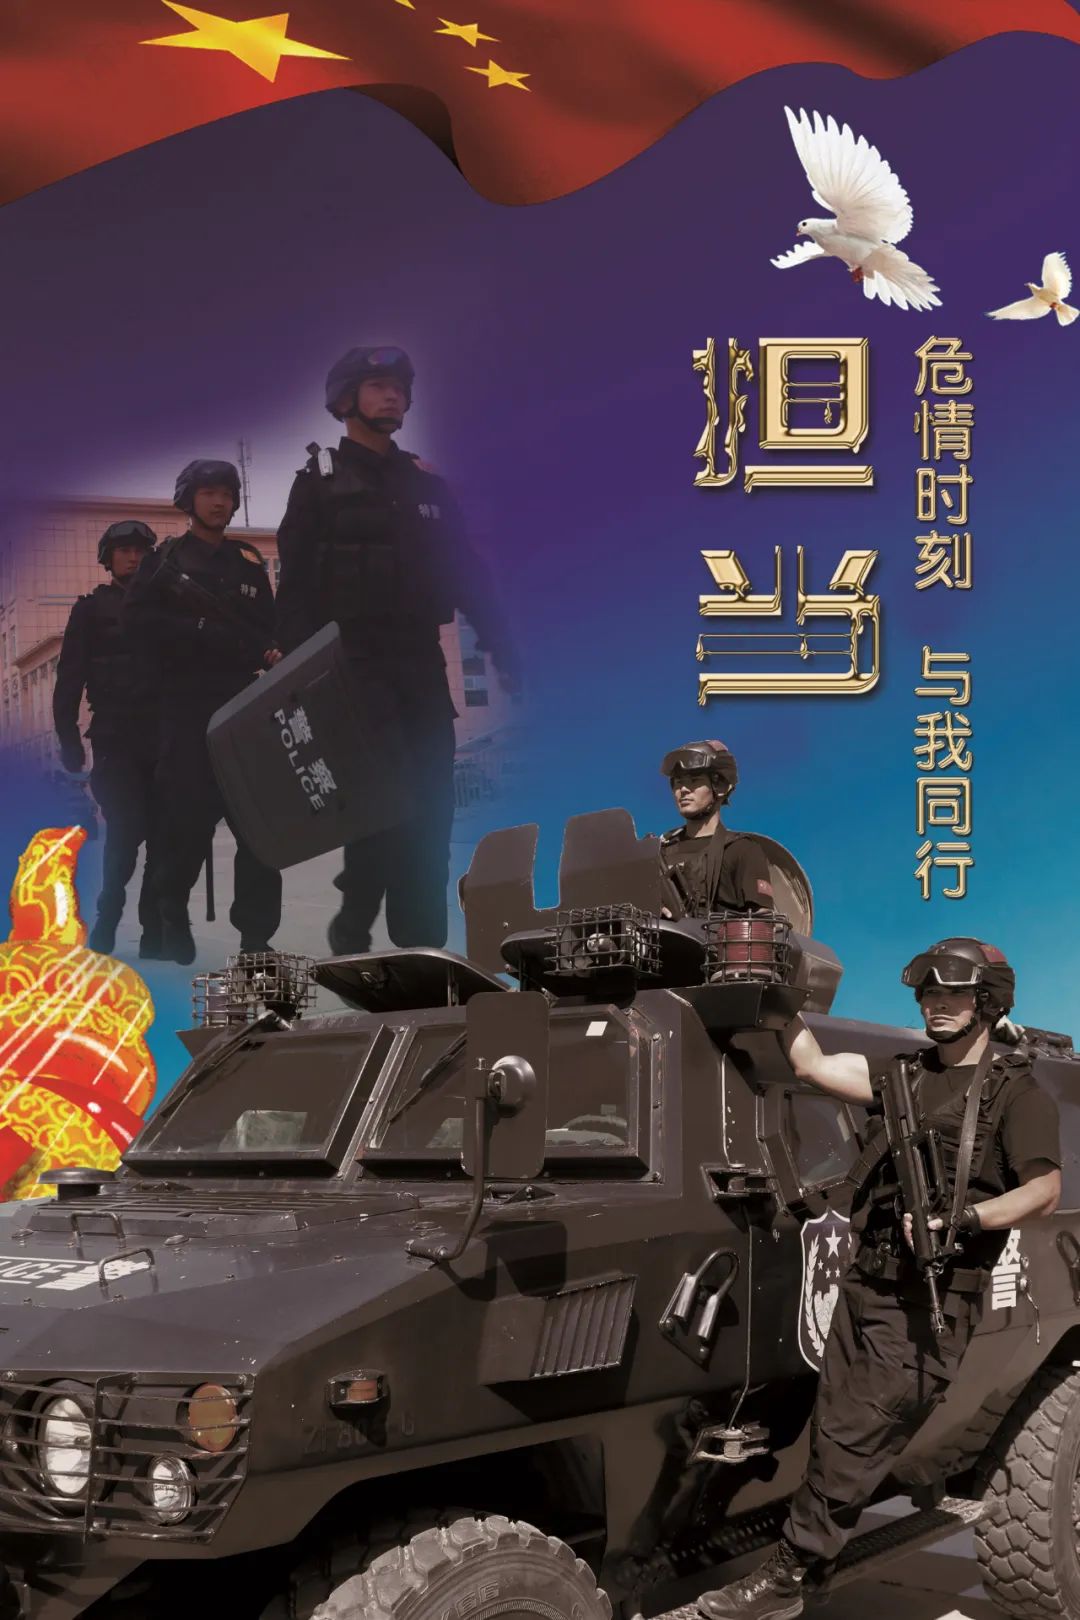 「你好,警察节」新源县公安局警察节宣传海报,速来围观